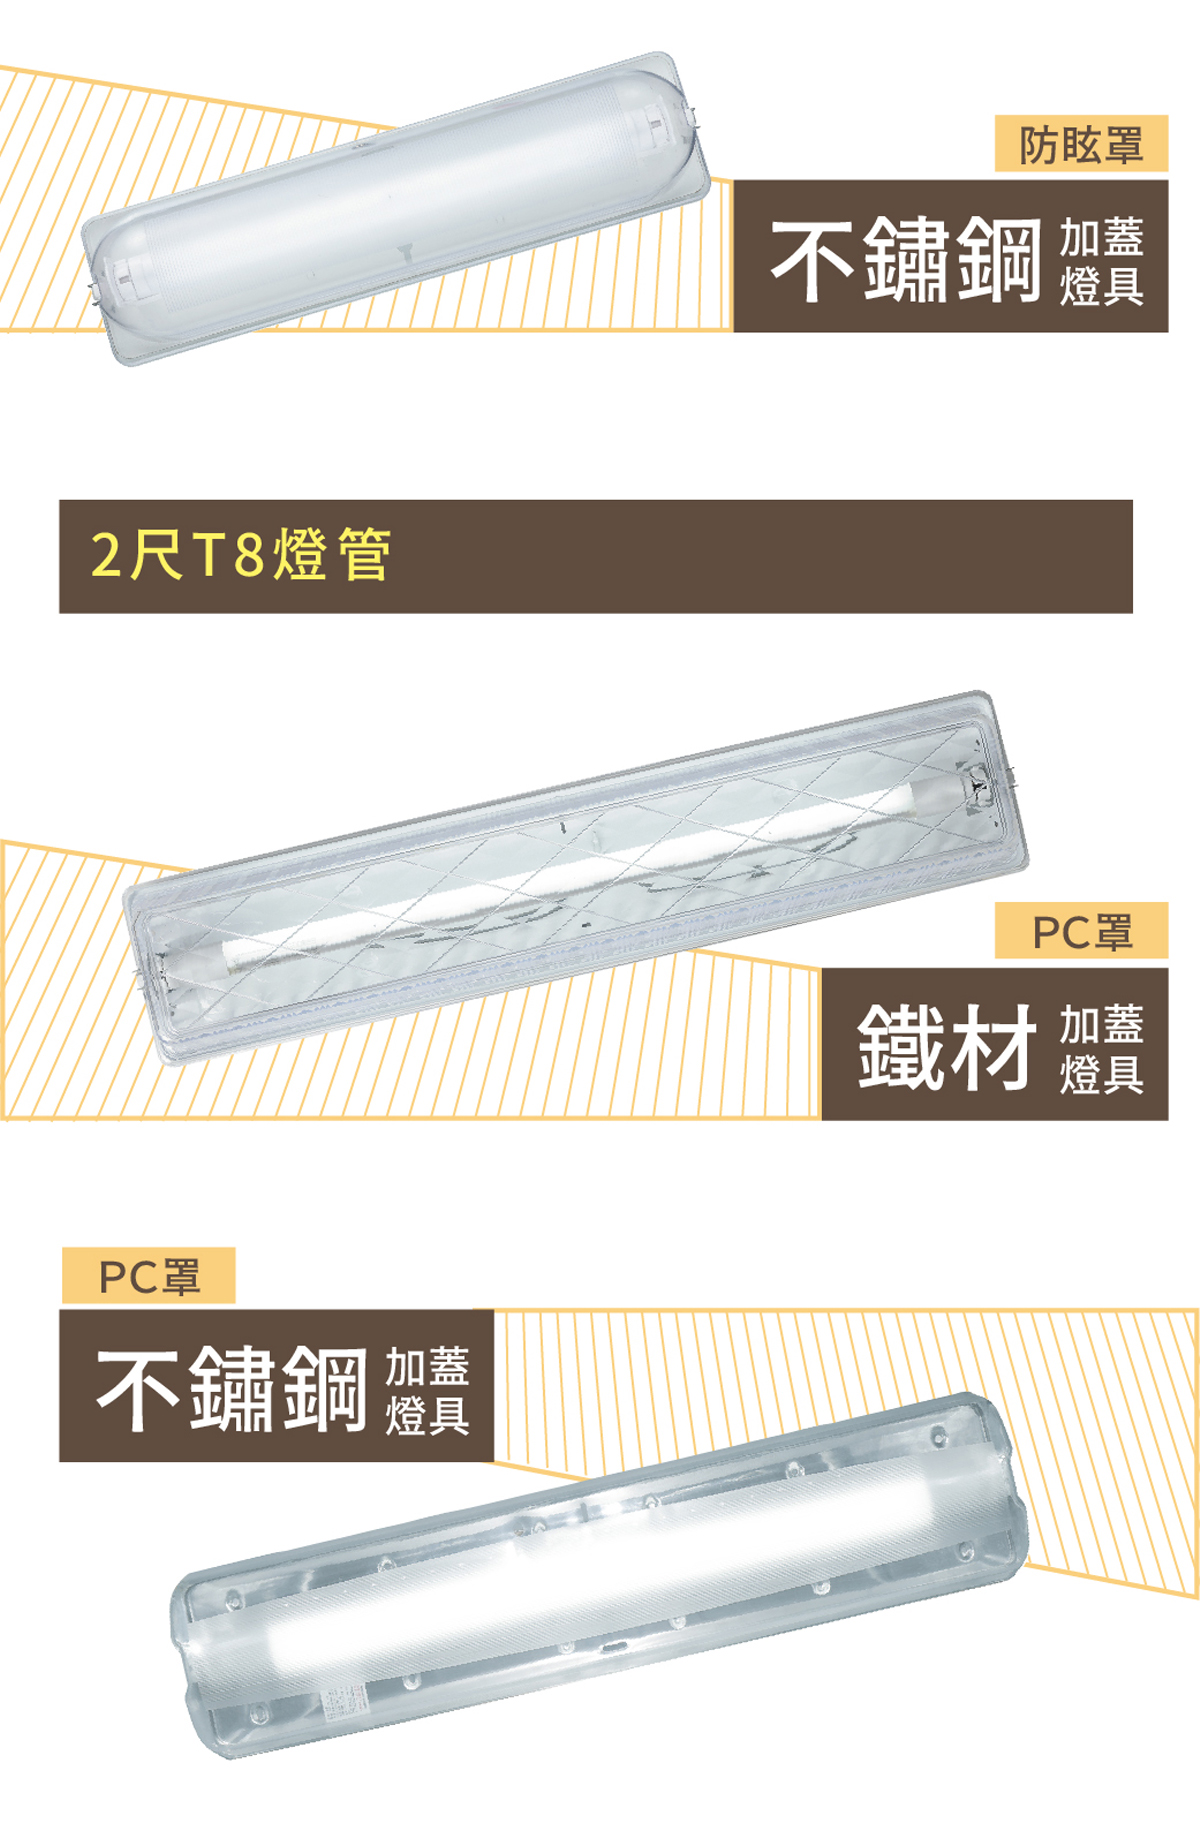 【舞光】LED T8 替換燈管式加蓋燈具 1尺/2尺 加罩